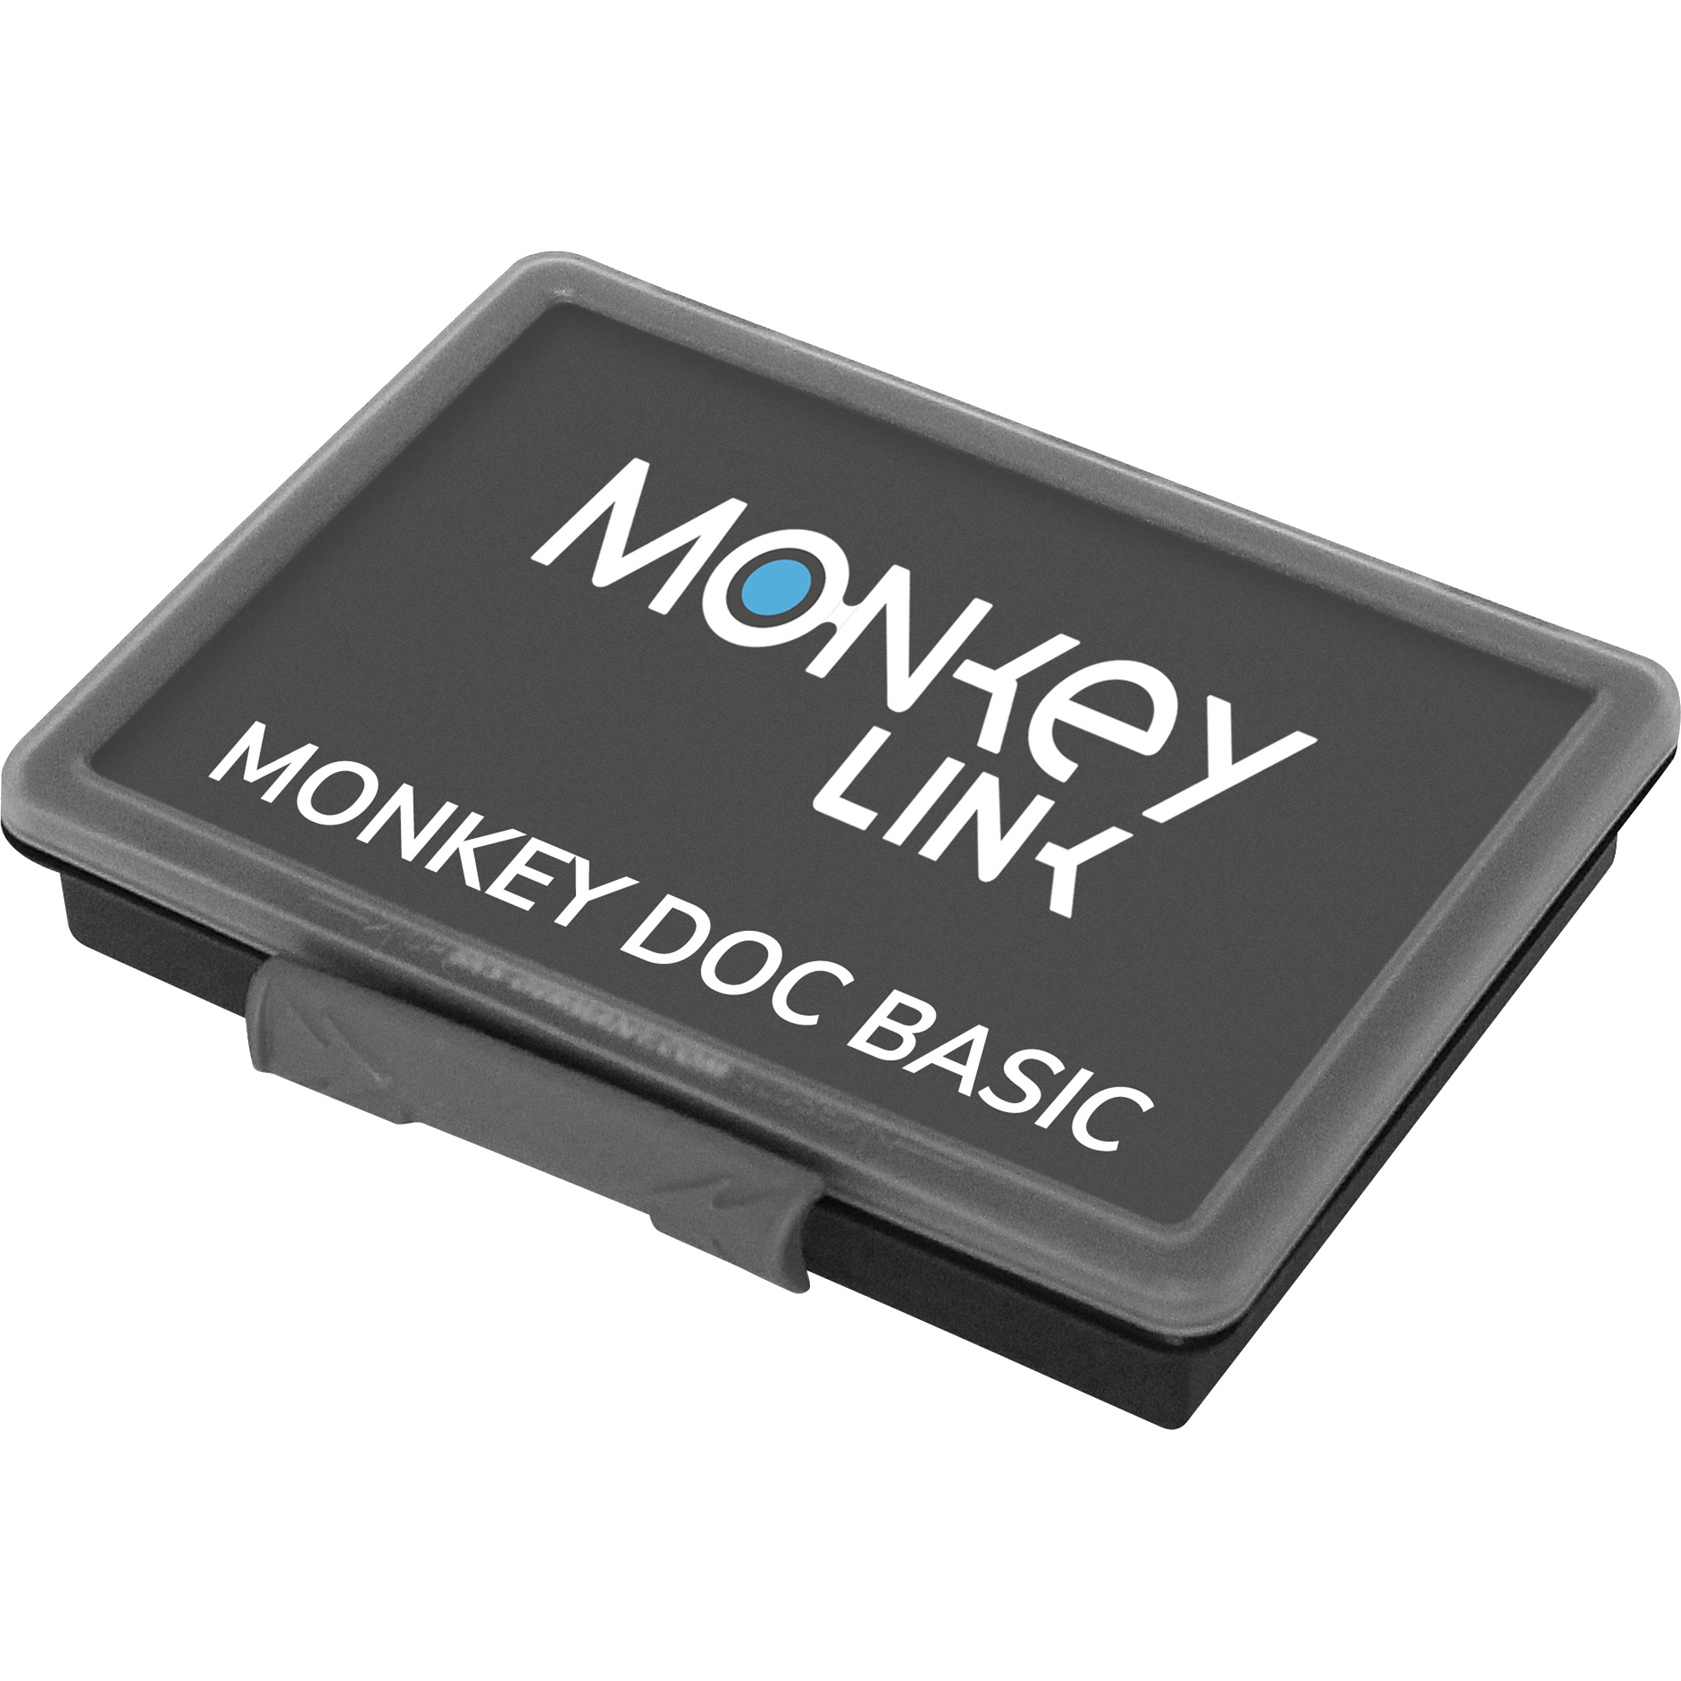 Produktbild von MonkeyLink MonkeyDoc BASIC - E-Bike Ersatzteile